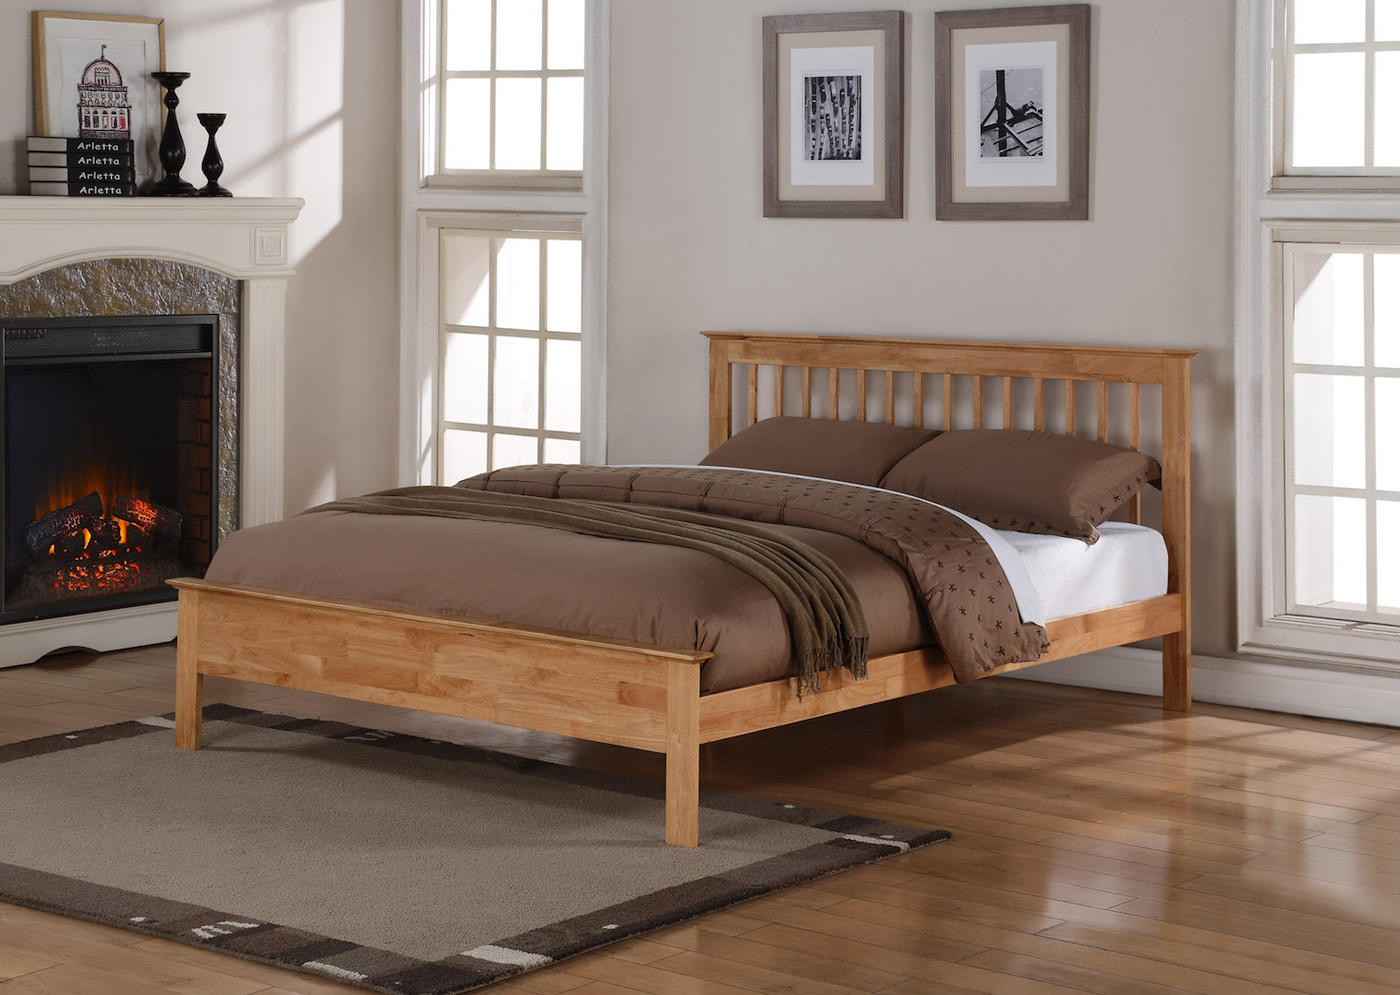 Pentre Oak Double Wooden Bed